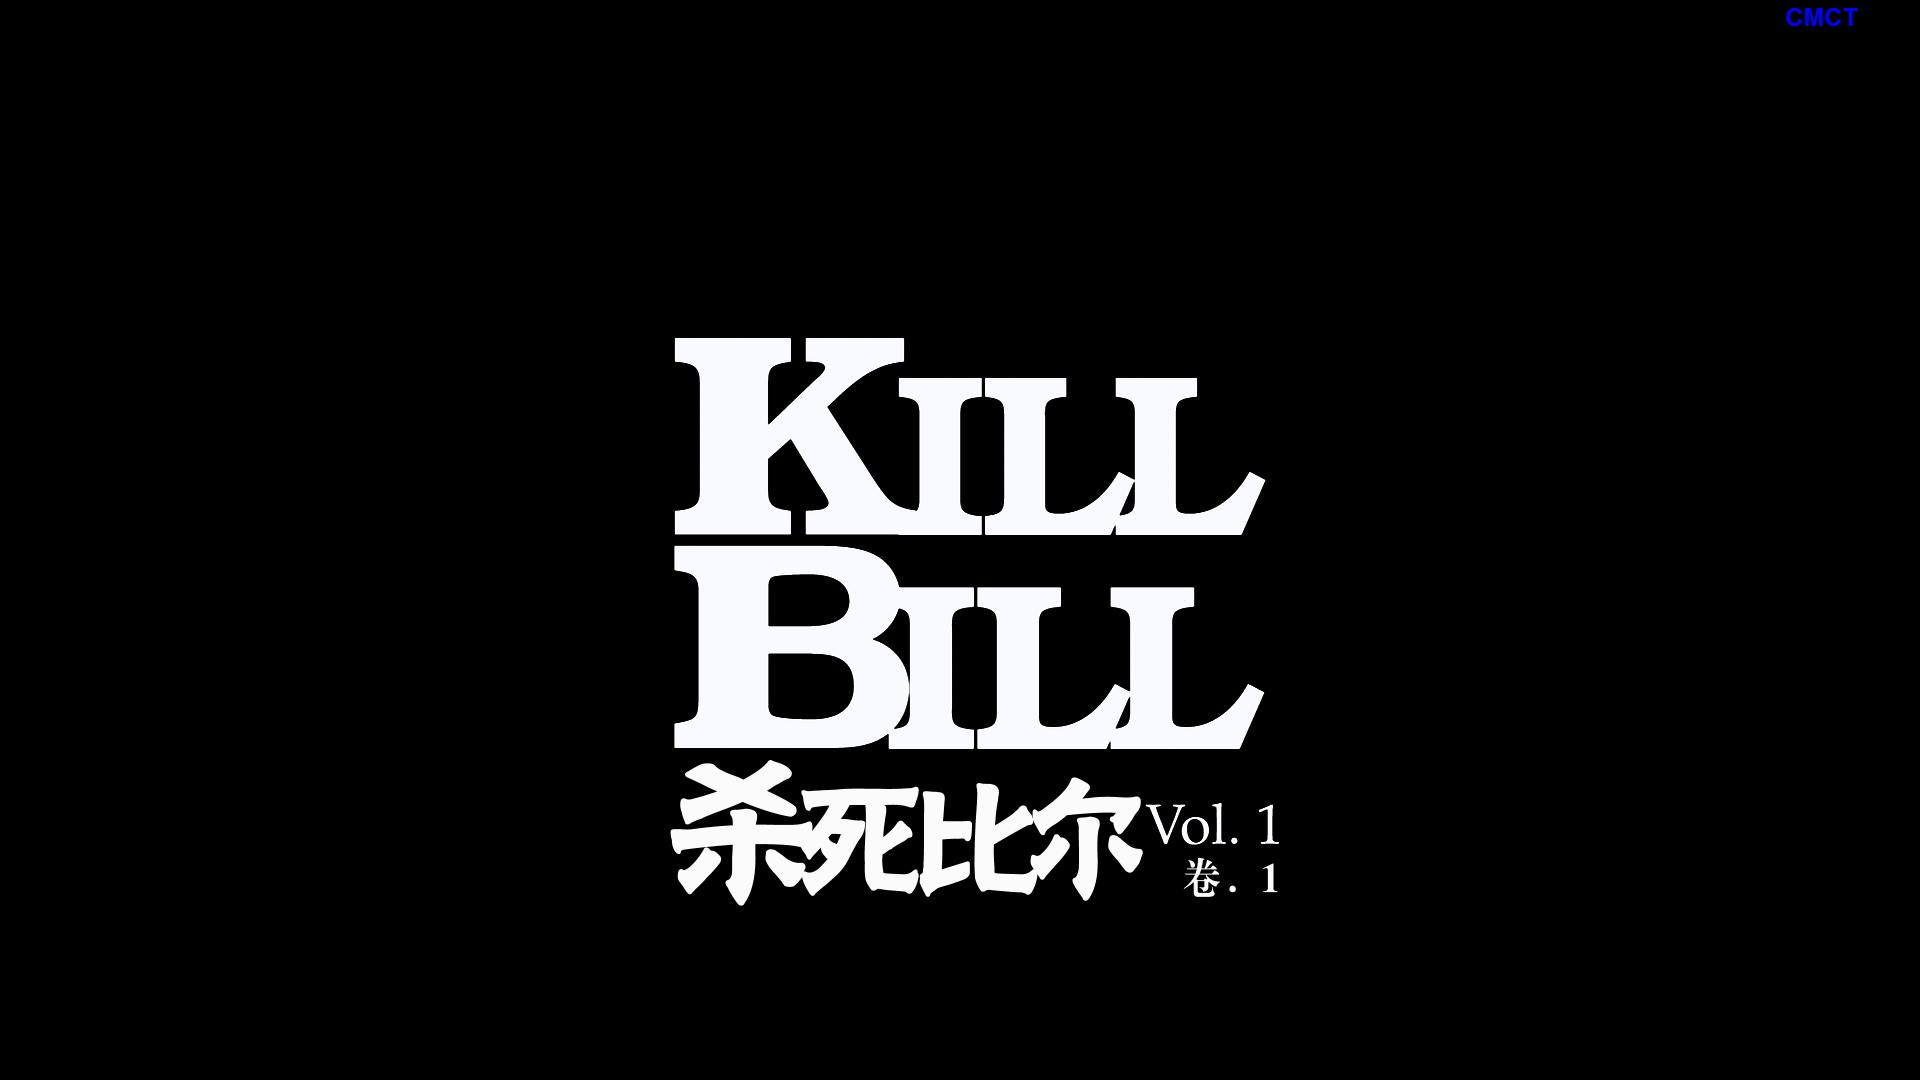 杀死比尔ⅠⅡ合集 [美版原盘DIY] [简/繁/双语特效字幕] IMDB Top 250 #151 Kill.Bill.Vol1-2.2003-2004.Blu-ray.1080p.AVC.LPCM5.1-CMCT    [73.76 GB]-9.jpg